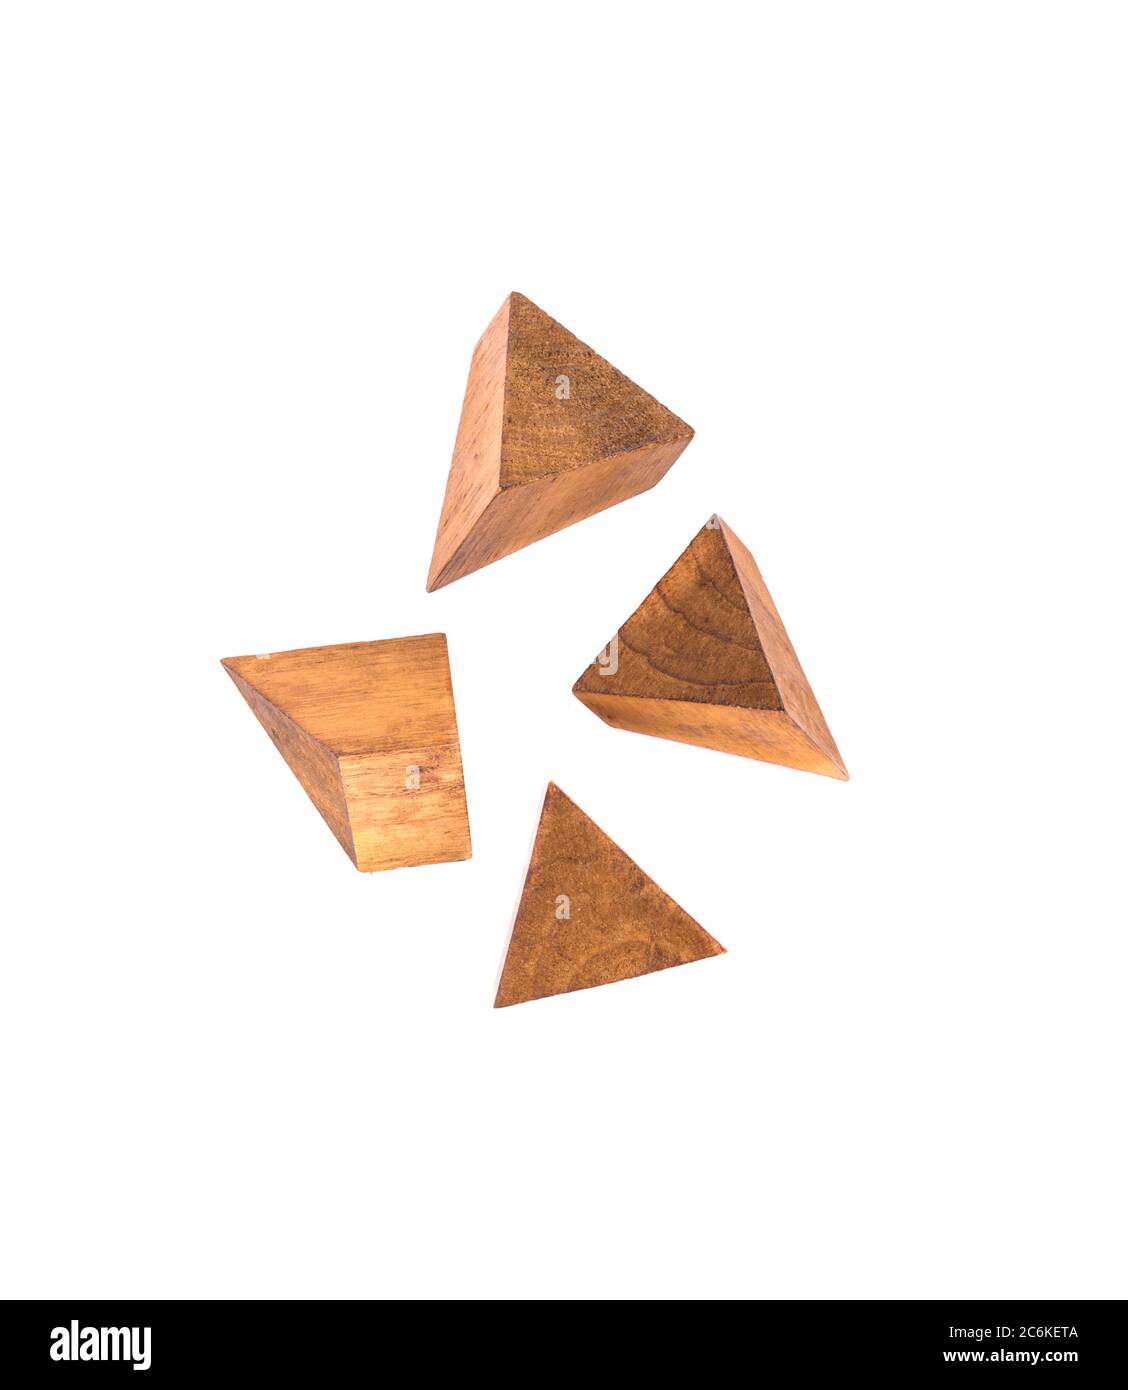 Cuatro piezas de un rompecabezas de pirámide de madera. Rompecabezas de  madera aislados sobre fondo blanco. Espacio de copia Fotografía de stock -  Alamy